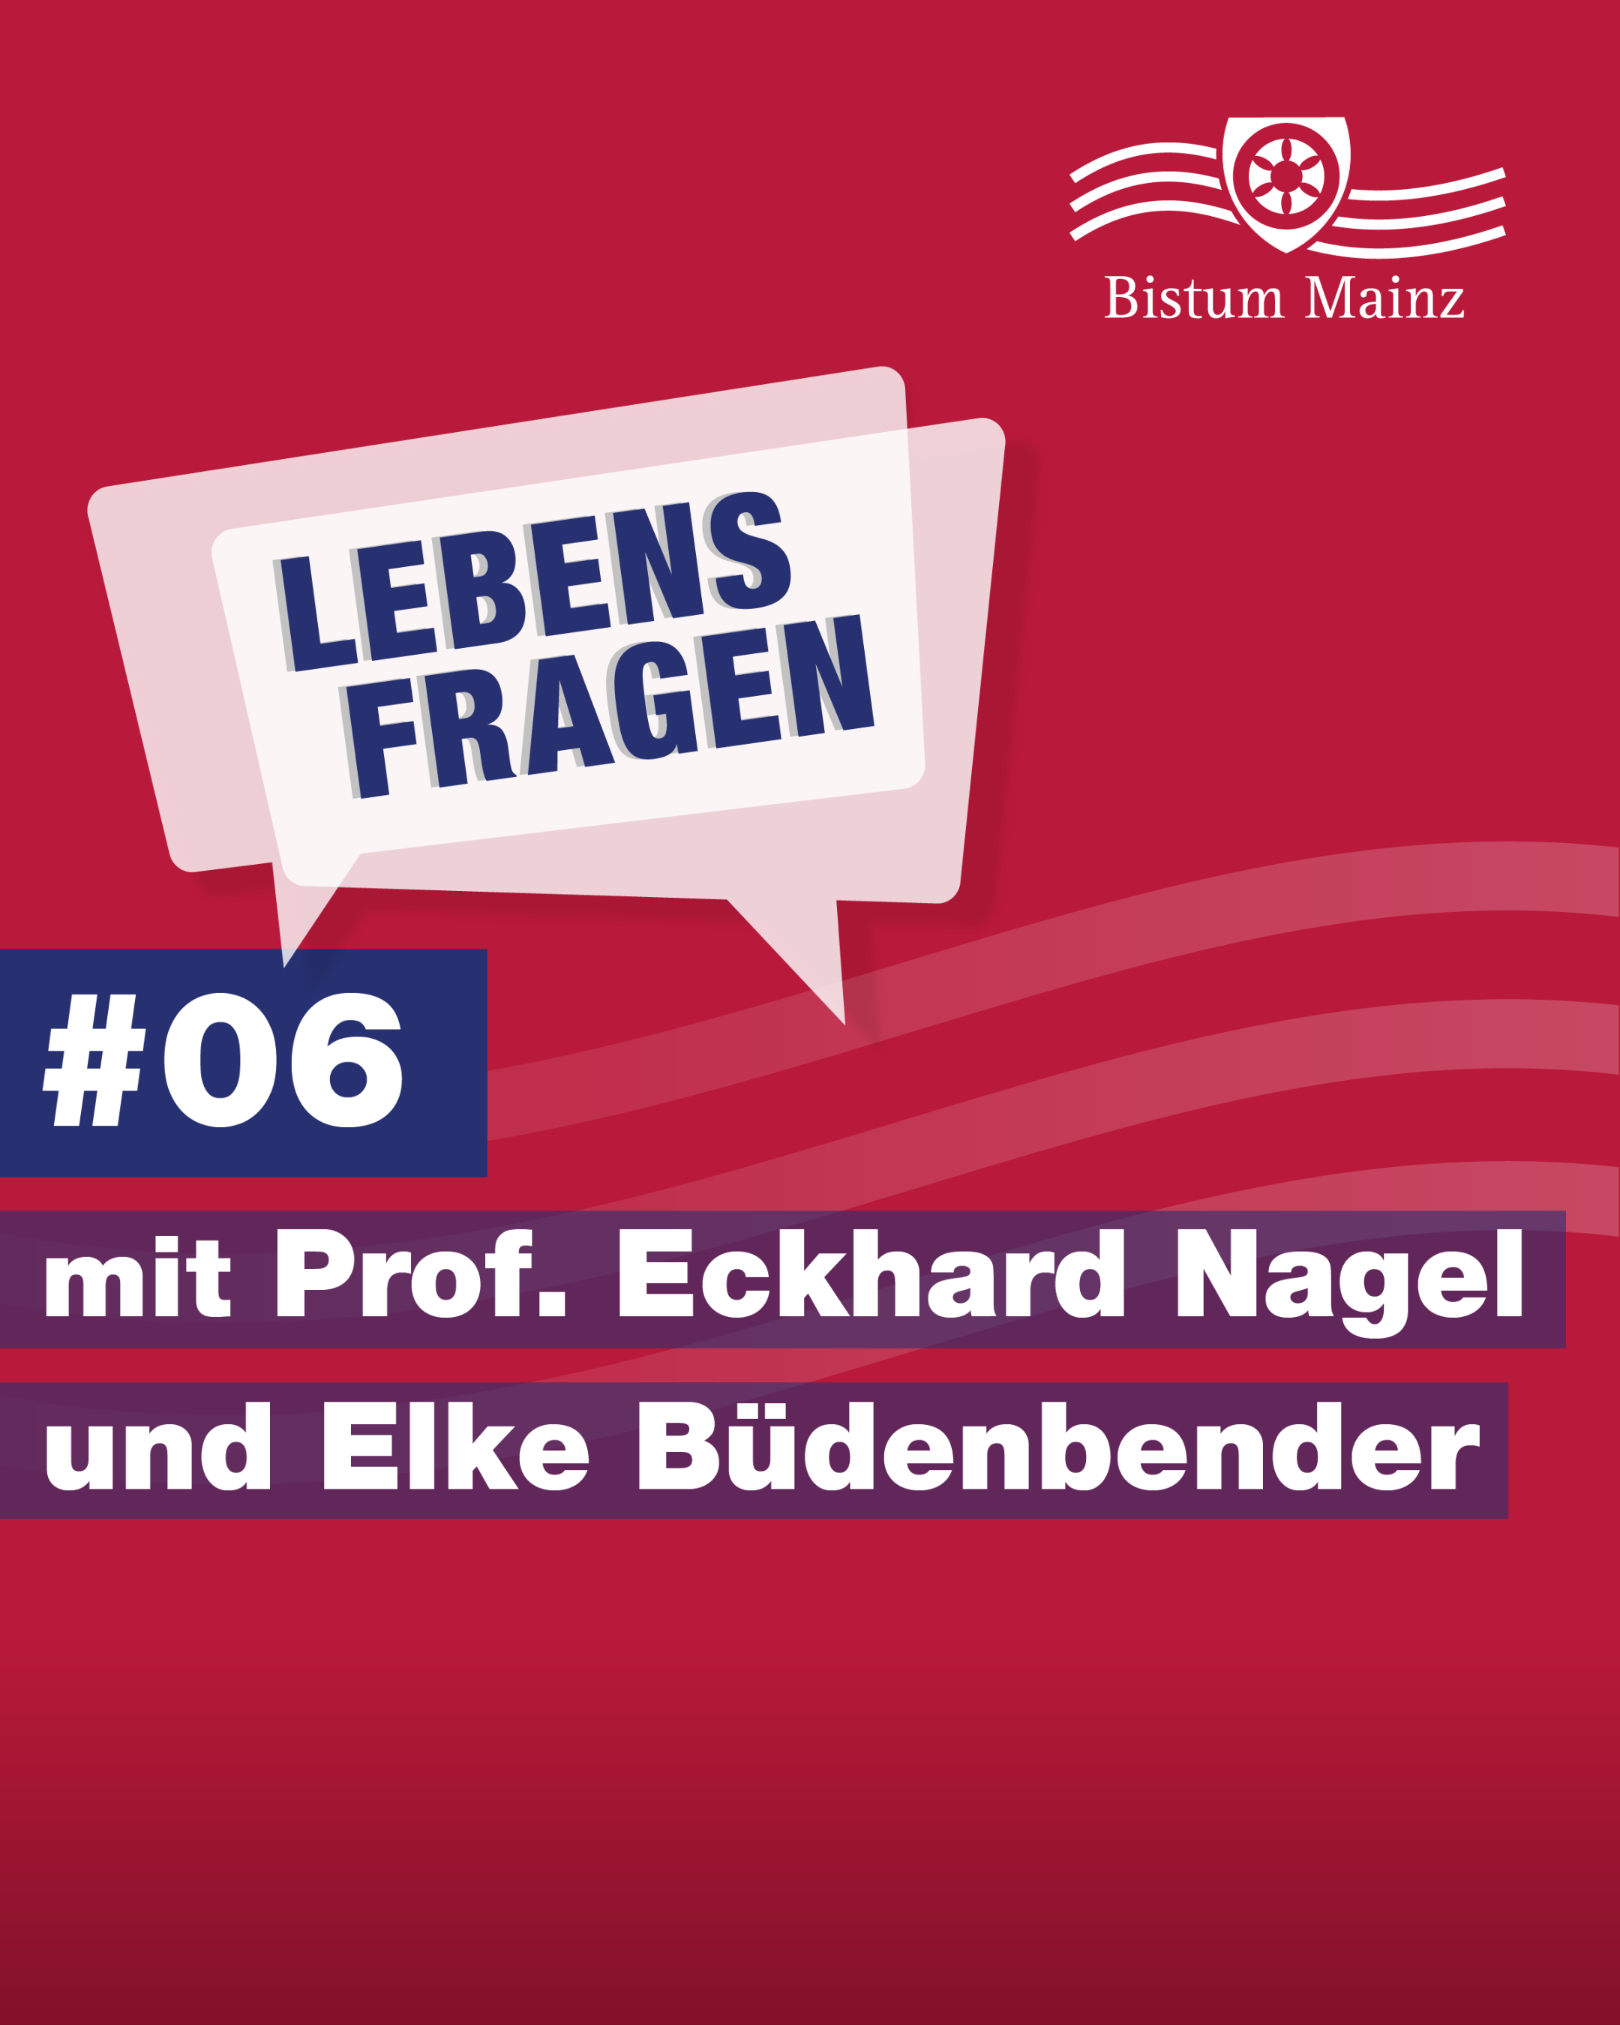 Lebensfragen-some-Prof-Eckhard-Nagel-Elke-Buedenbender (c) Bistum Mainz